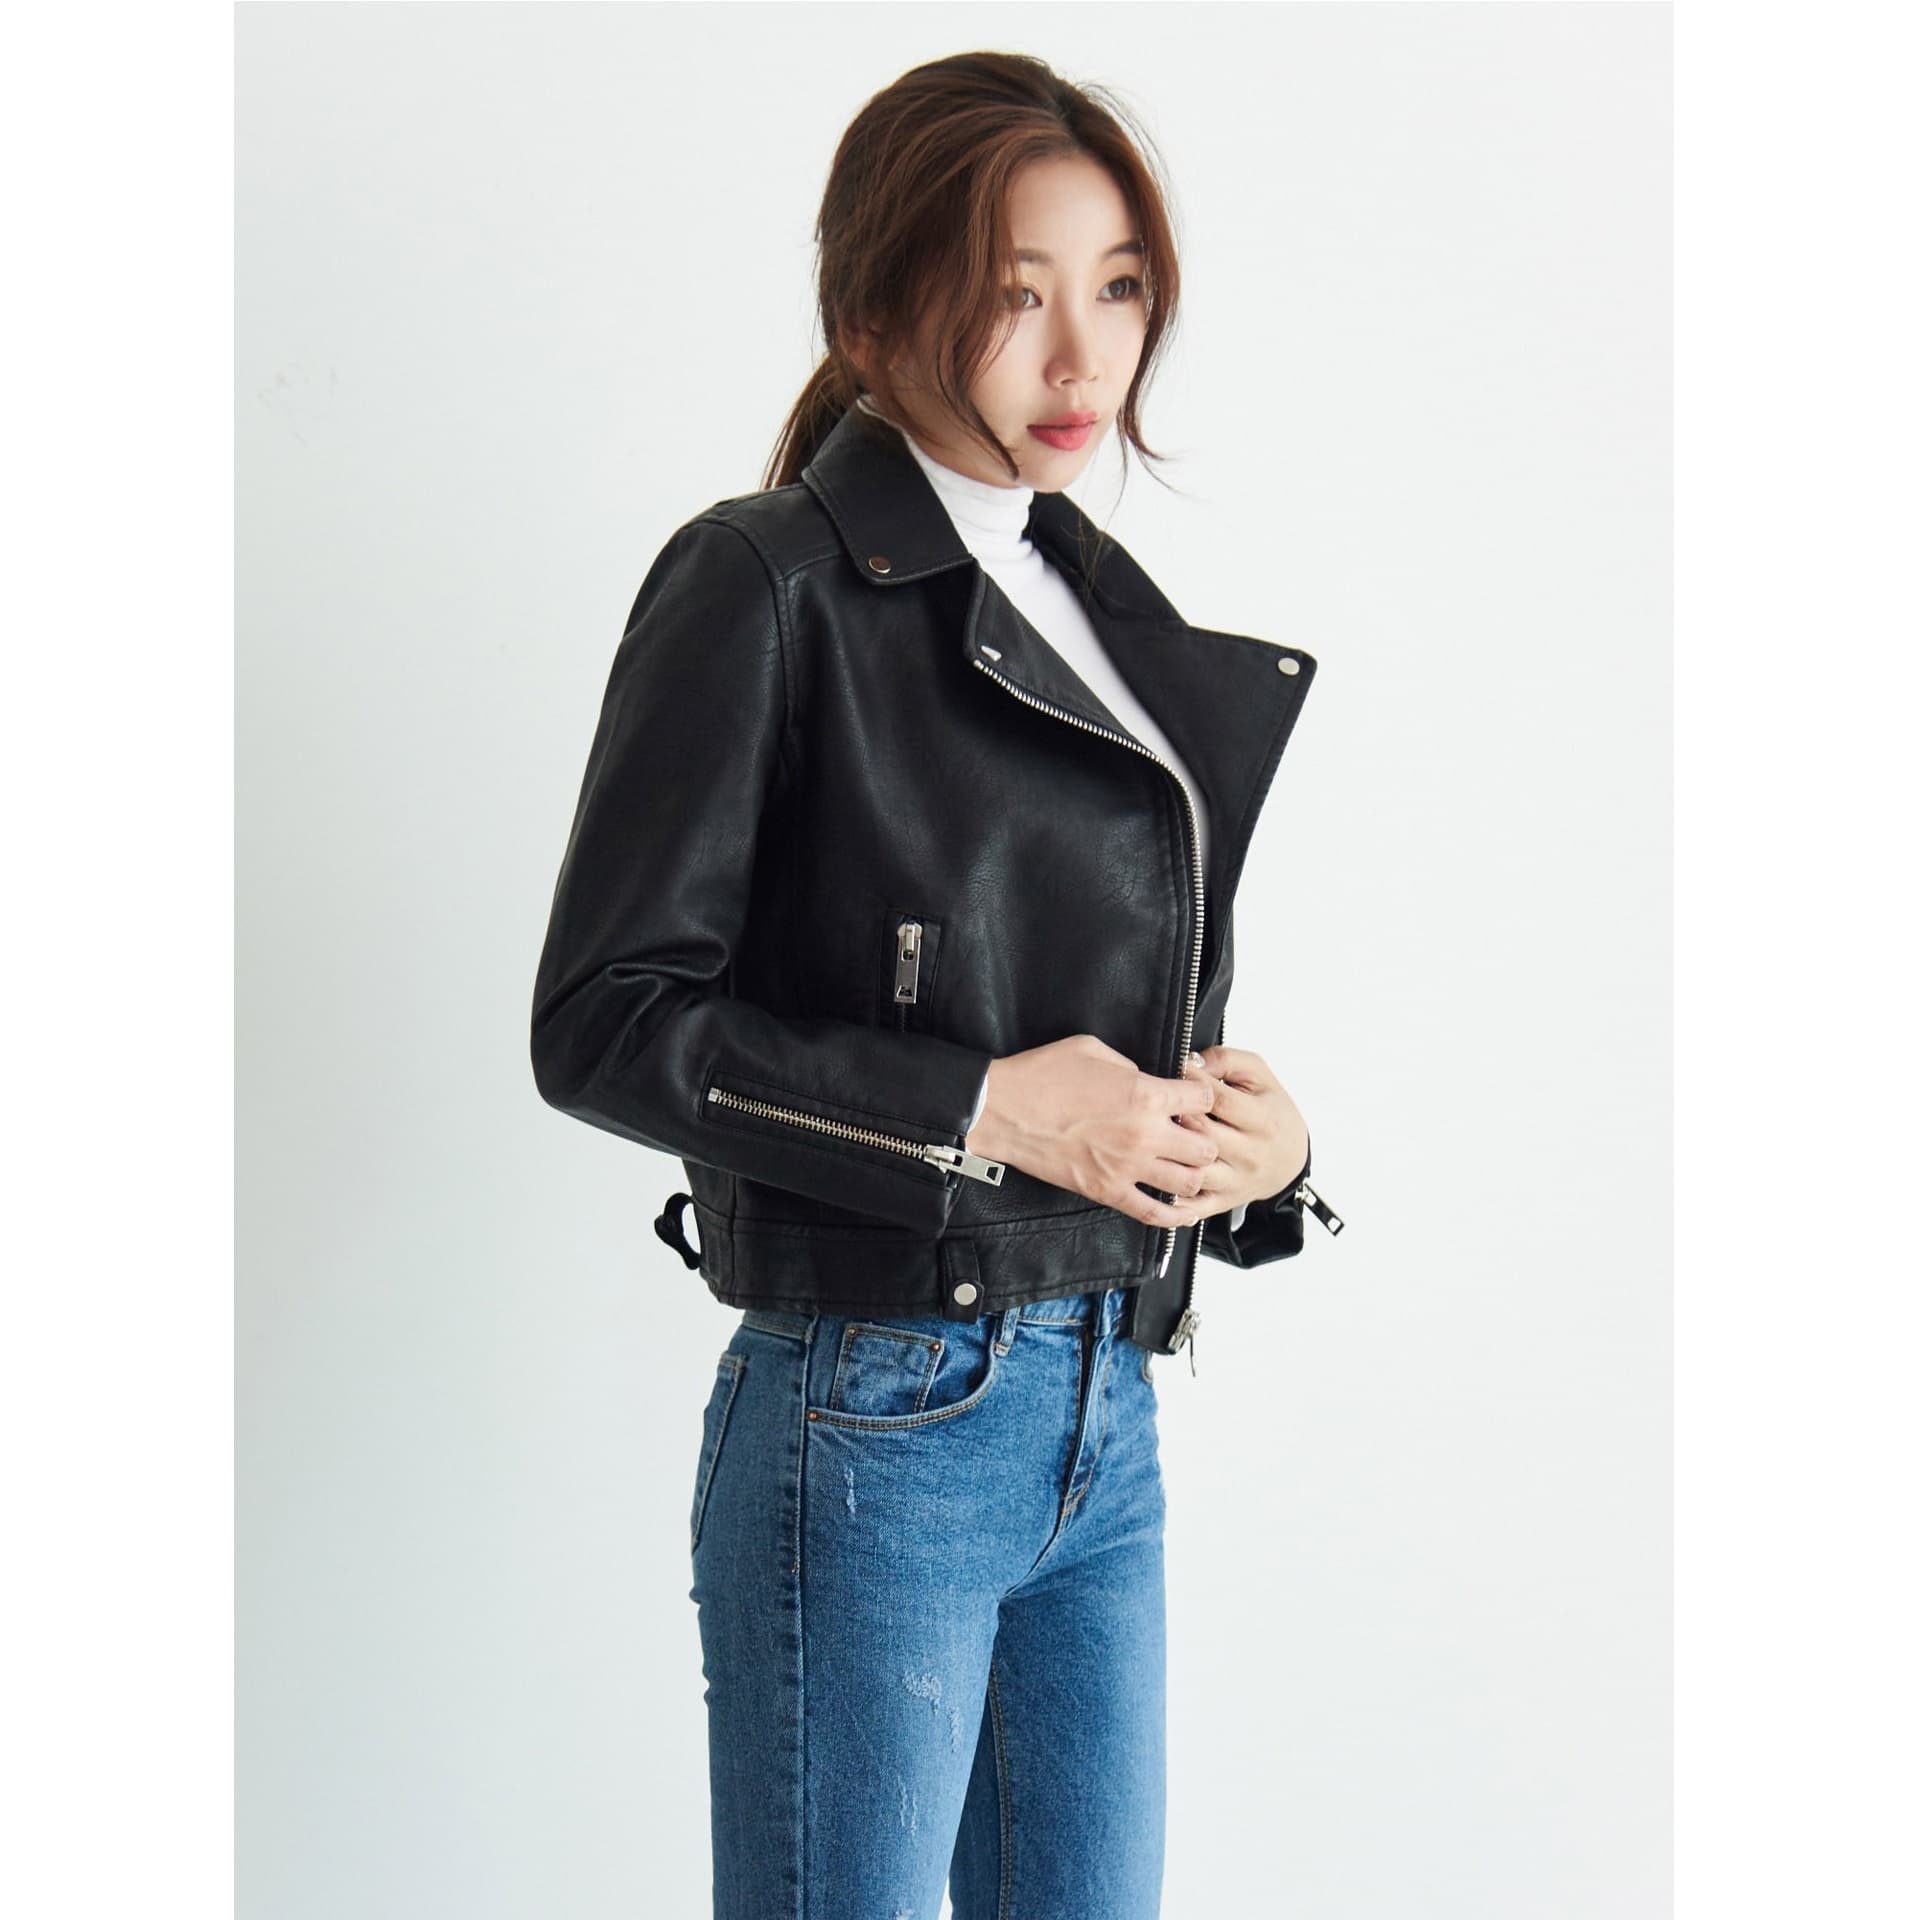 Black Leather Rider Jacket, Autumn Classic Korean Fashion | tradekorea